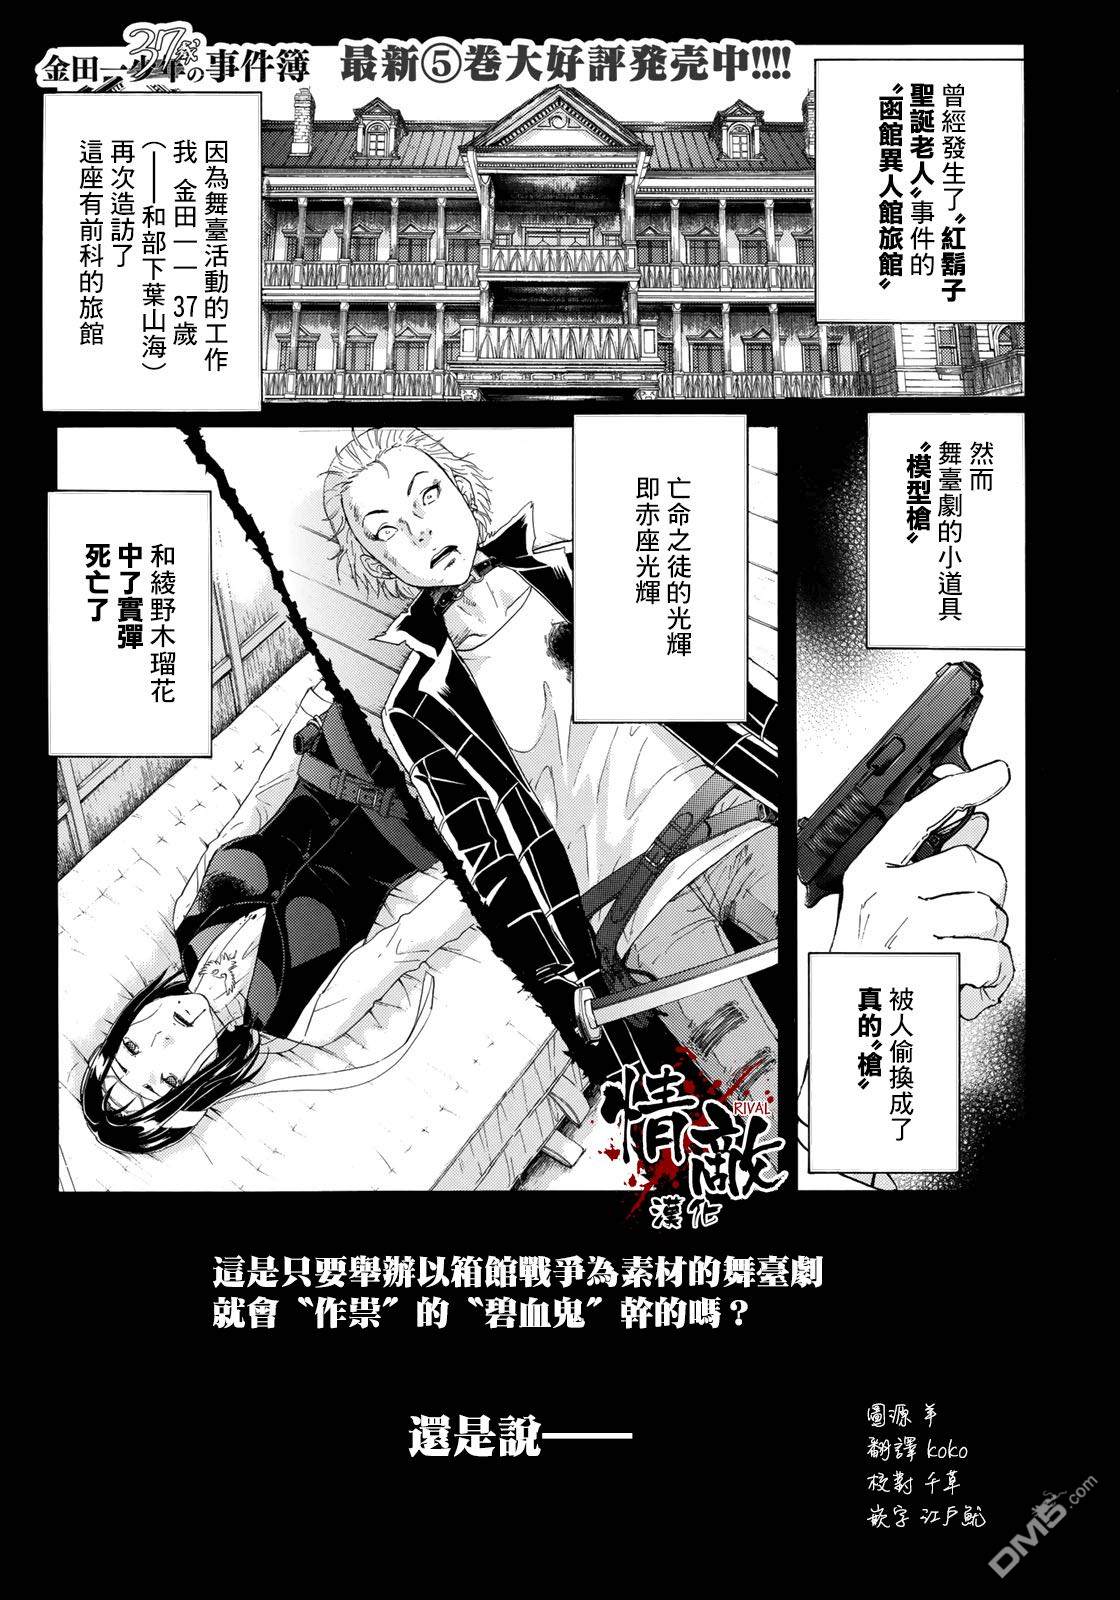 《金田一37岁事件簿》第44话 函馆旅馆新的杀人事件第1页